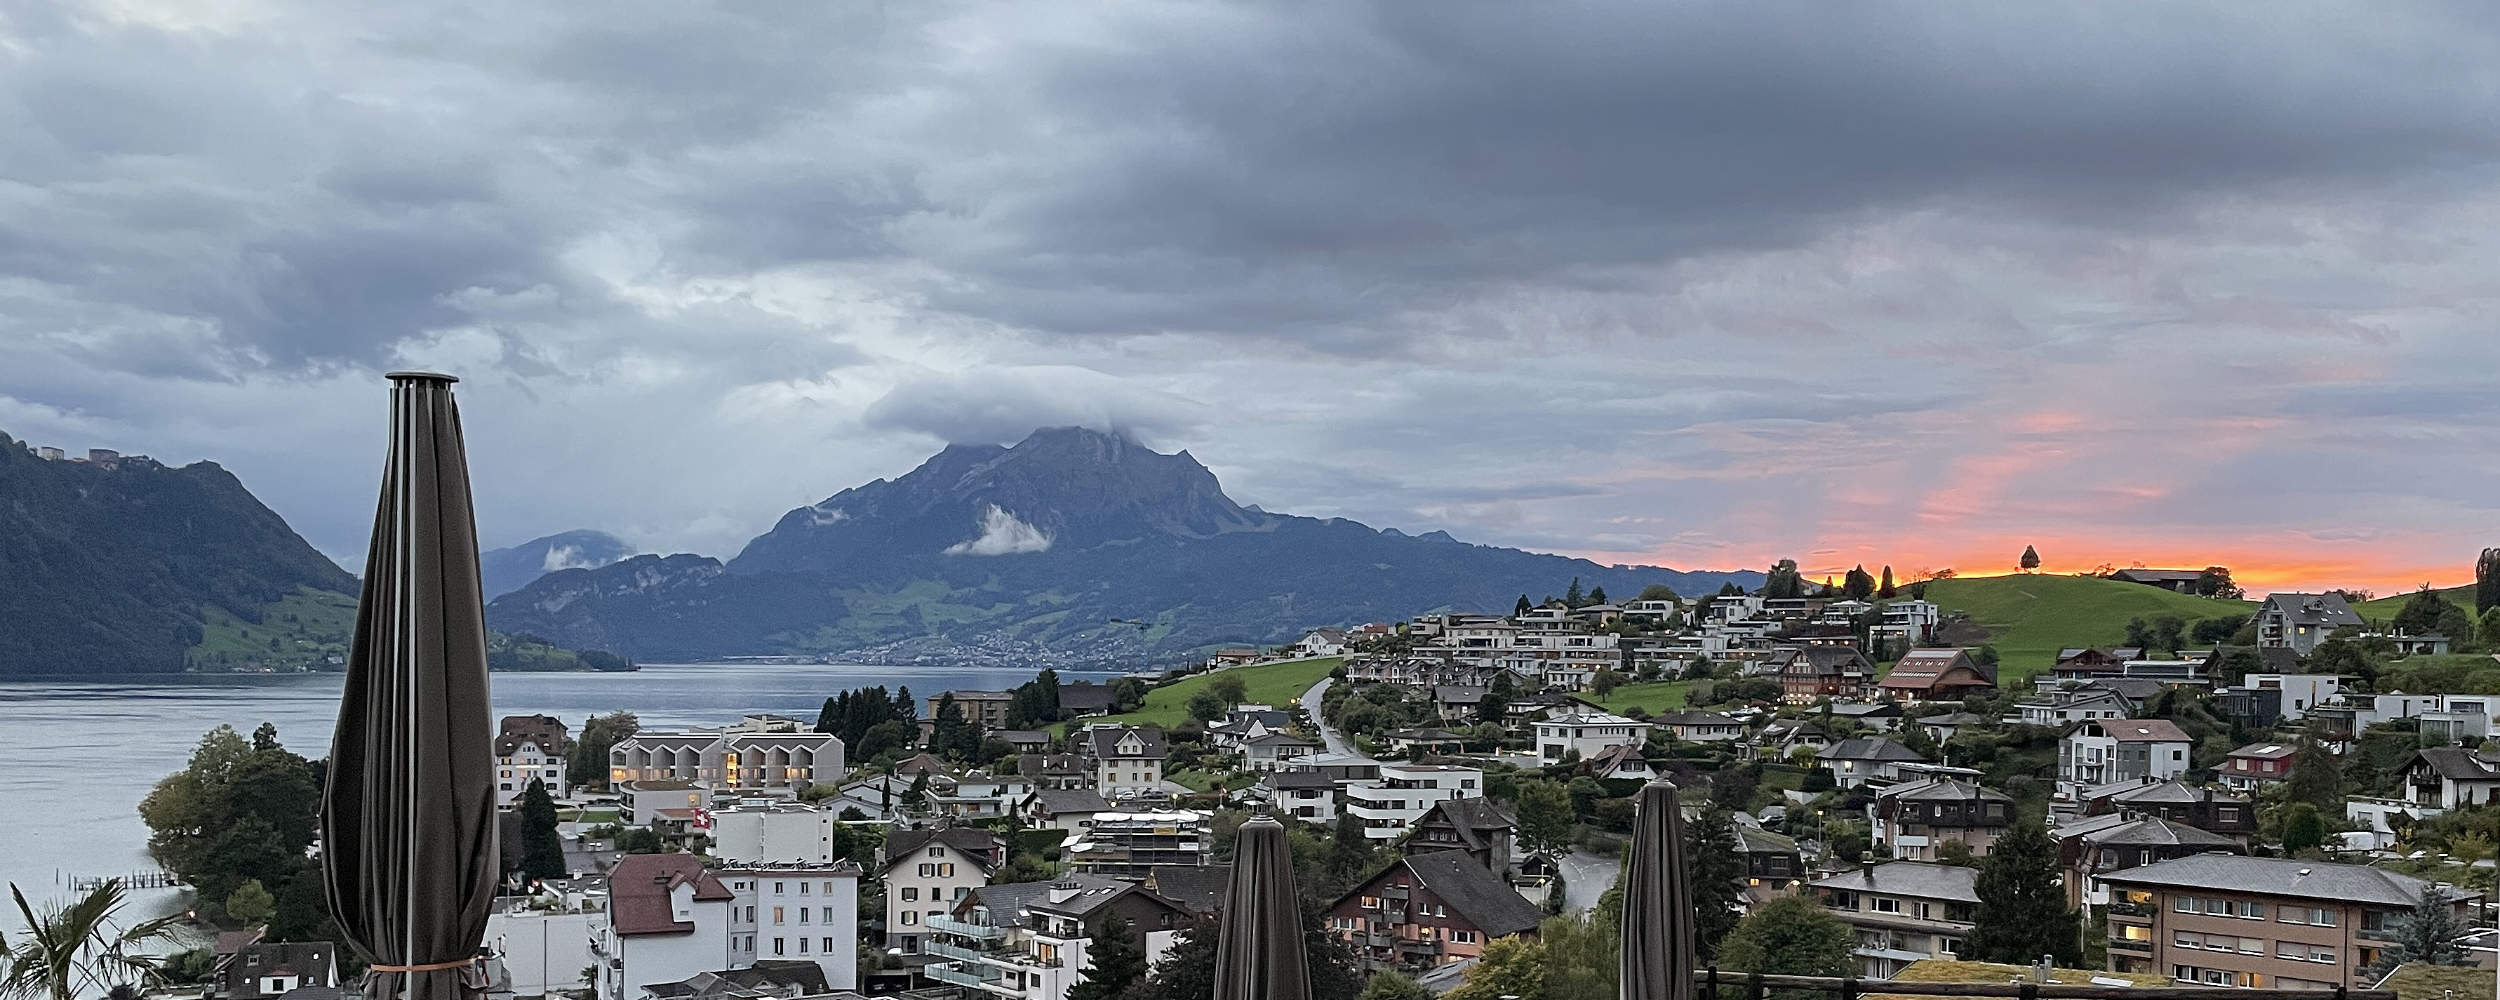 Besuch in der Schweiz - Seen, Berge und ein Leuchten am Firmament ...